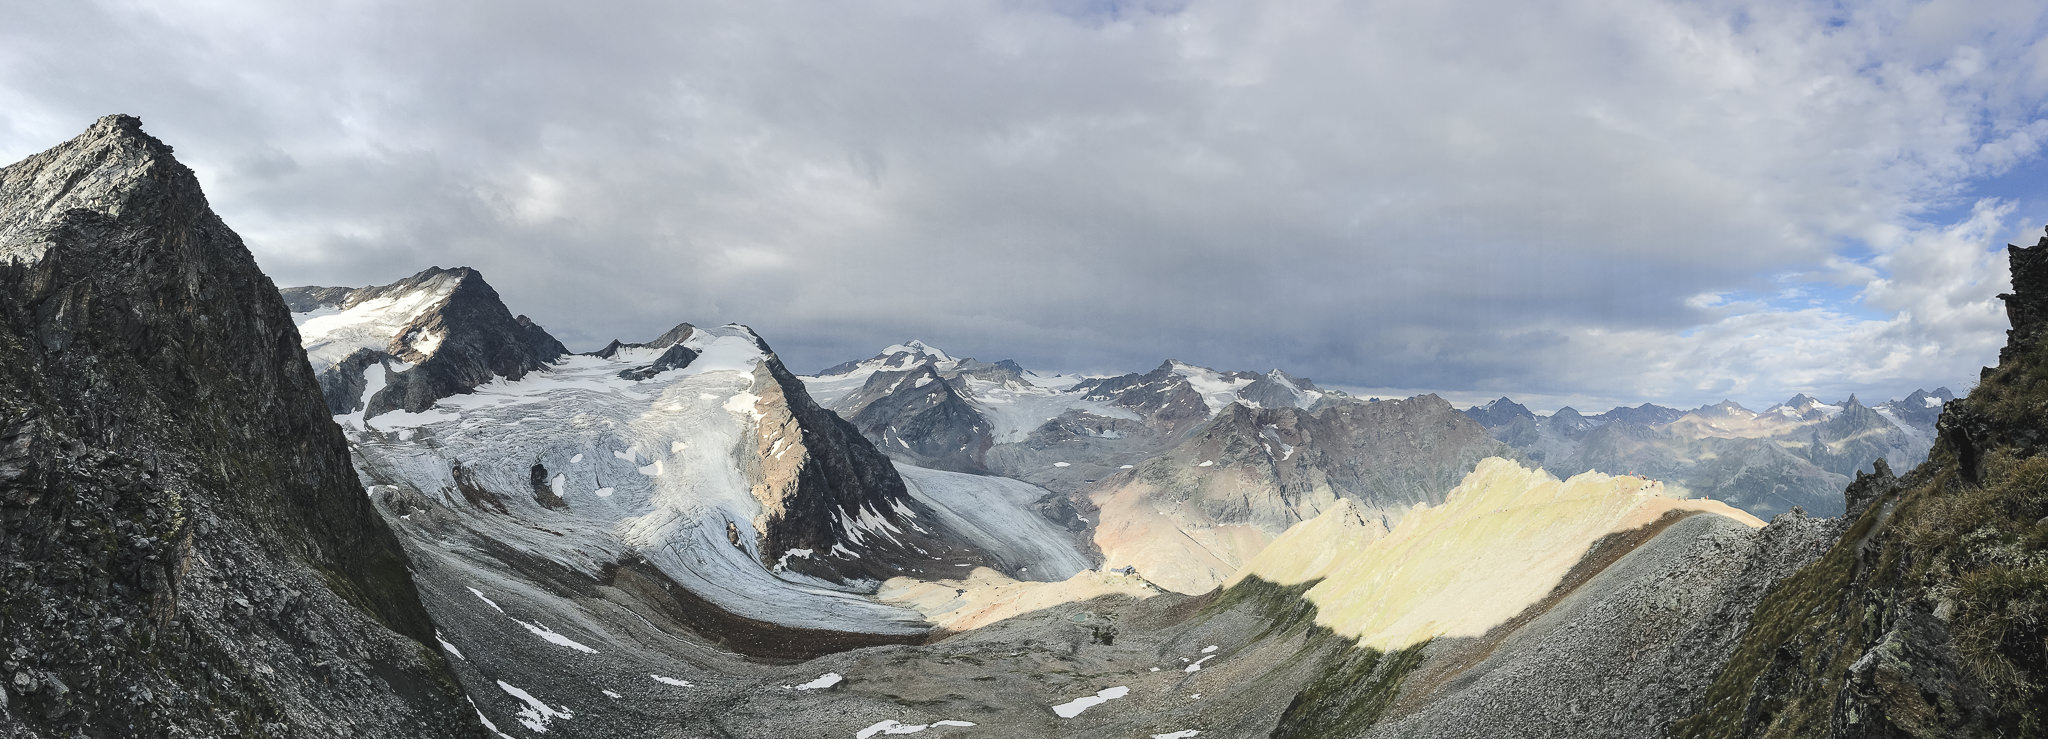 Wandern auf dem E5: Ausblick auf die Gletscher bei der Braunschweiger Hütte